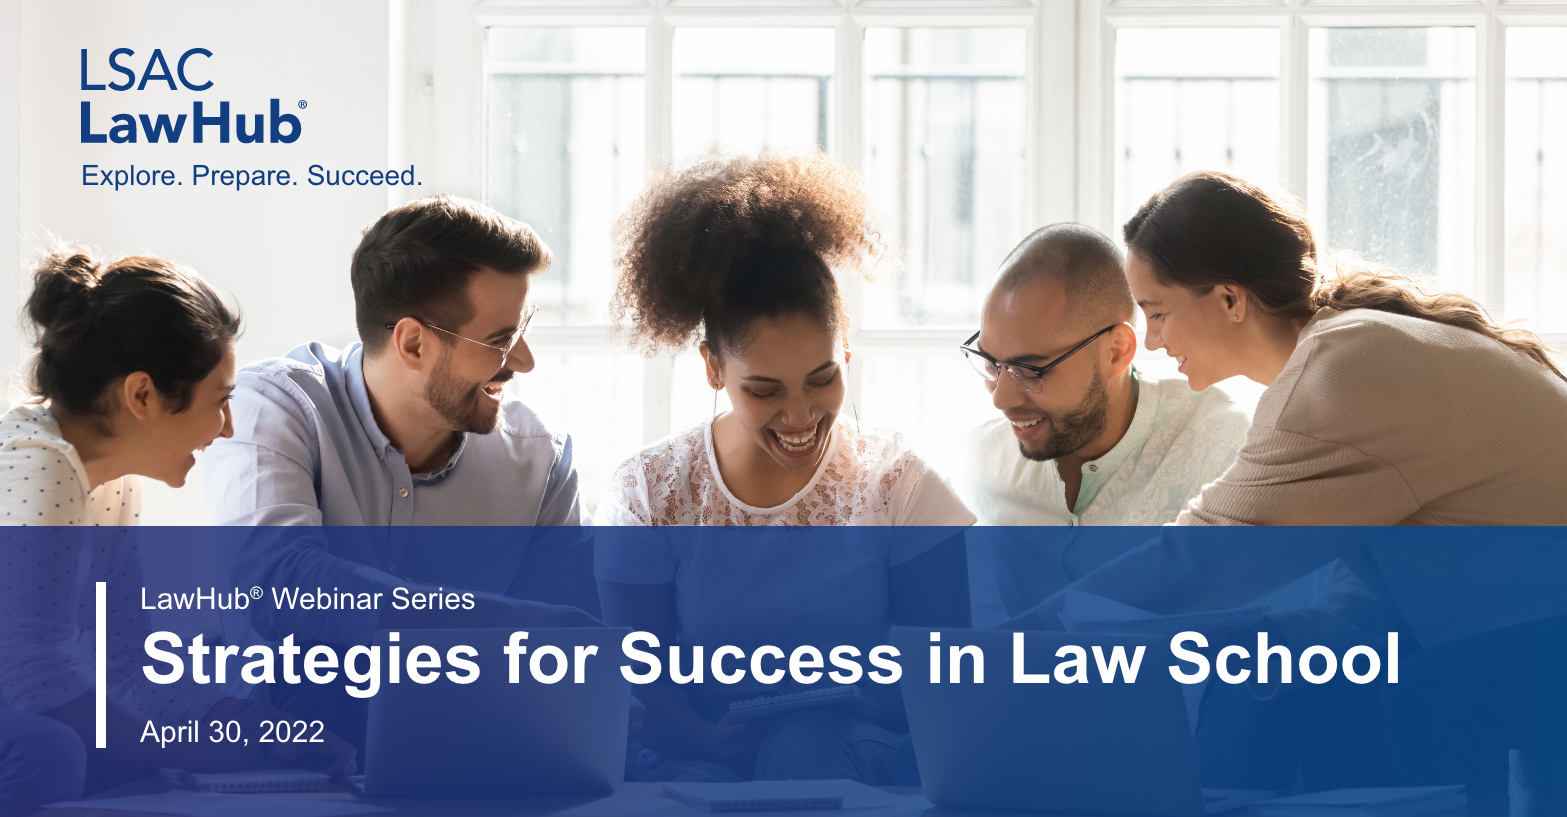 LSAC LawHub Webinar Series - Strategies for Success in Law School